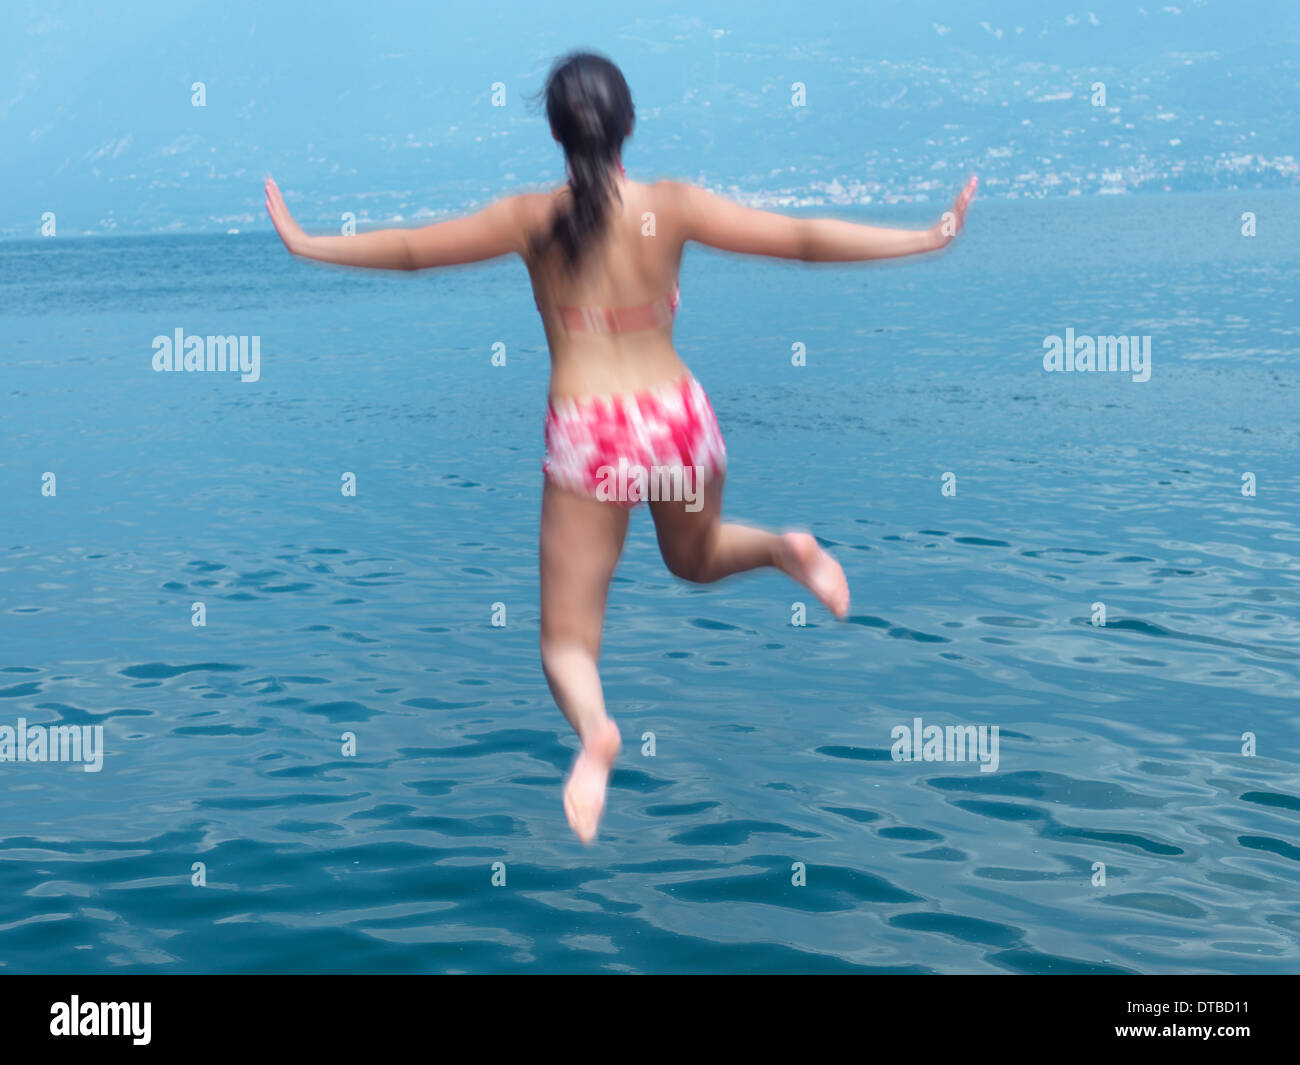 Campione del Garda, Italien, junge Mädchen ins Wasser springen Stockfoto